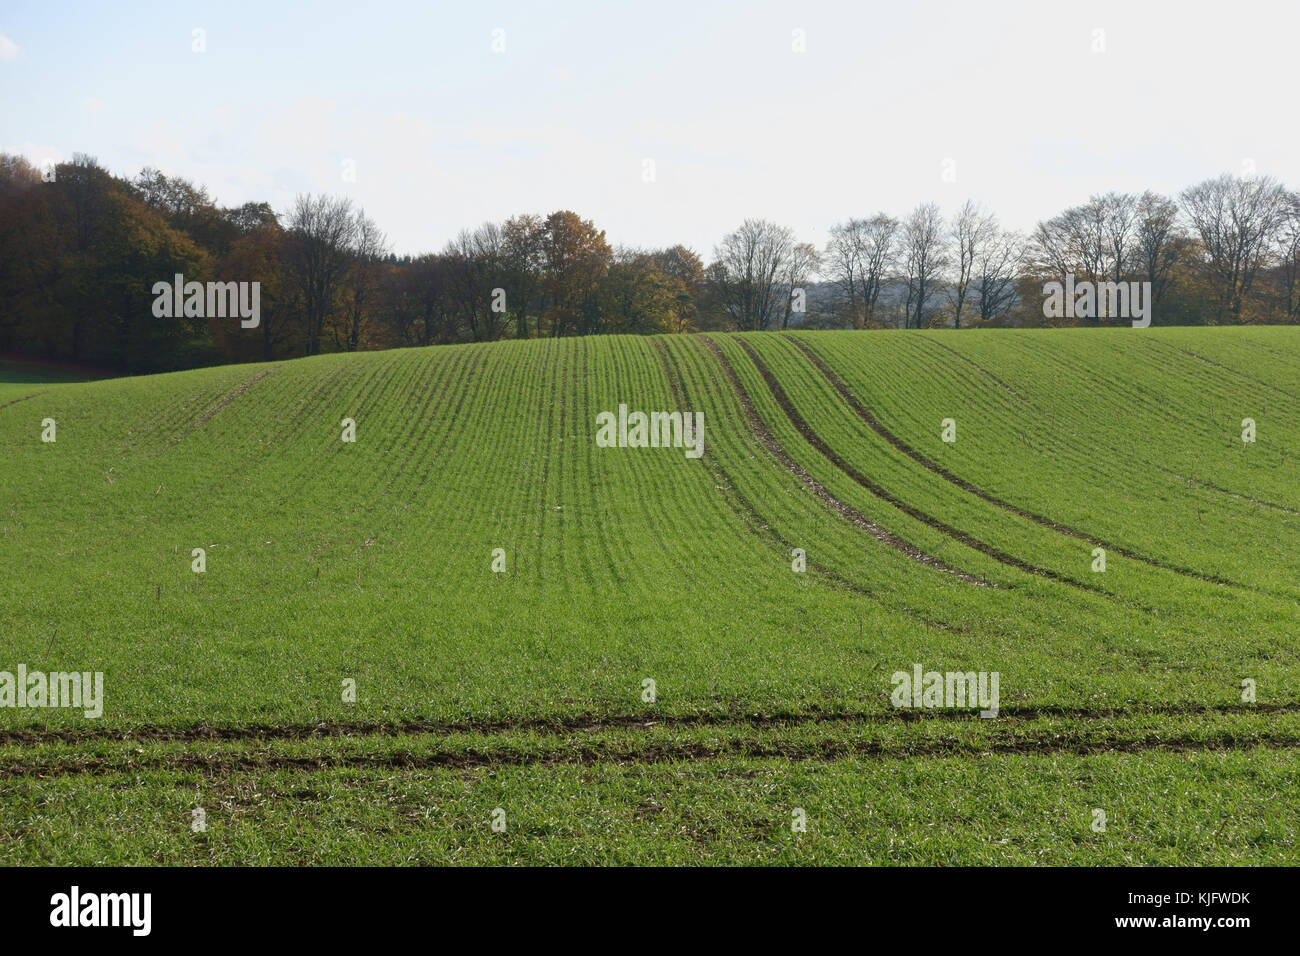 Anzeigen der Zeilen eines jungen Erntegut der bestockungszeit Winterweizen Pflanzen im Herbst, Berkshire, November Stockfoto